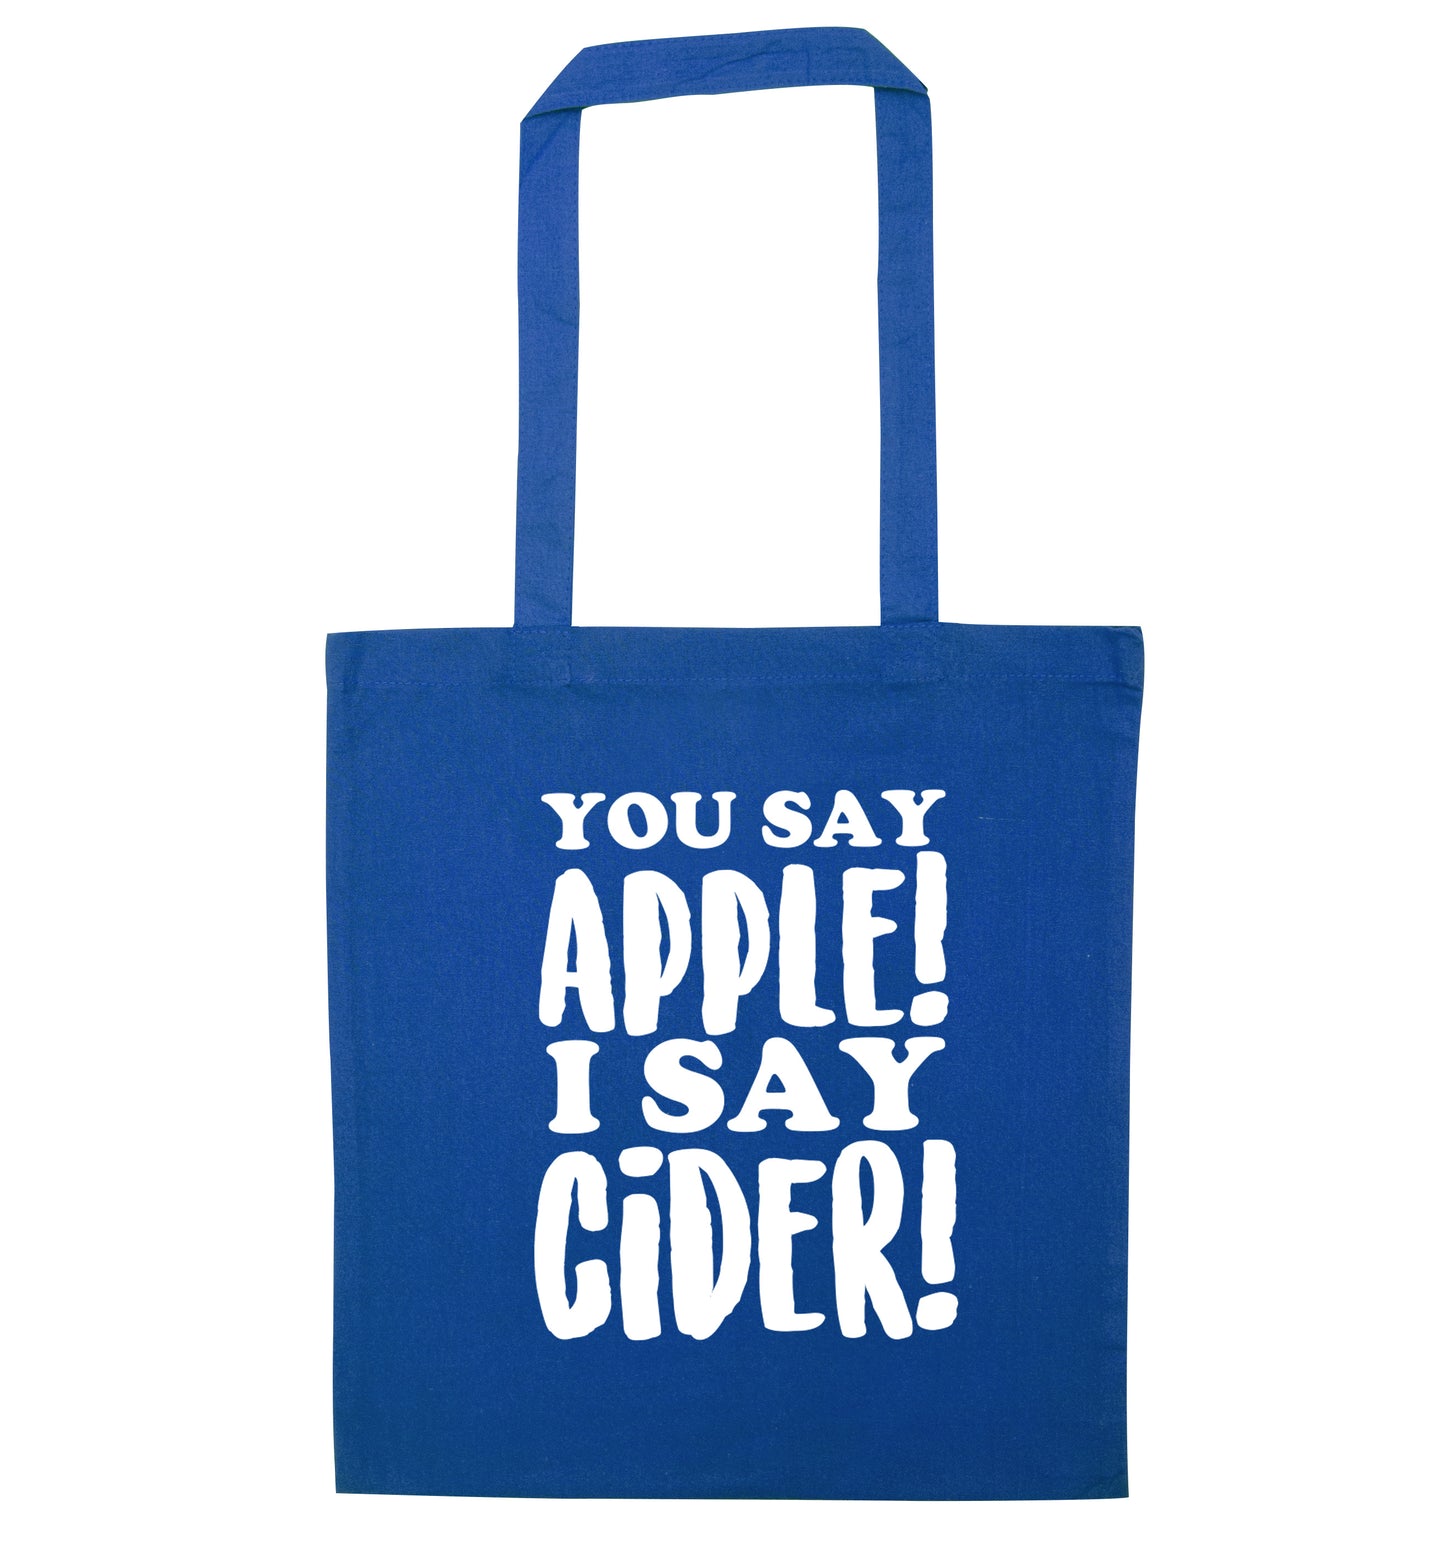 You say apple I say cider! blue tote bag